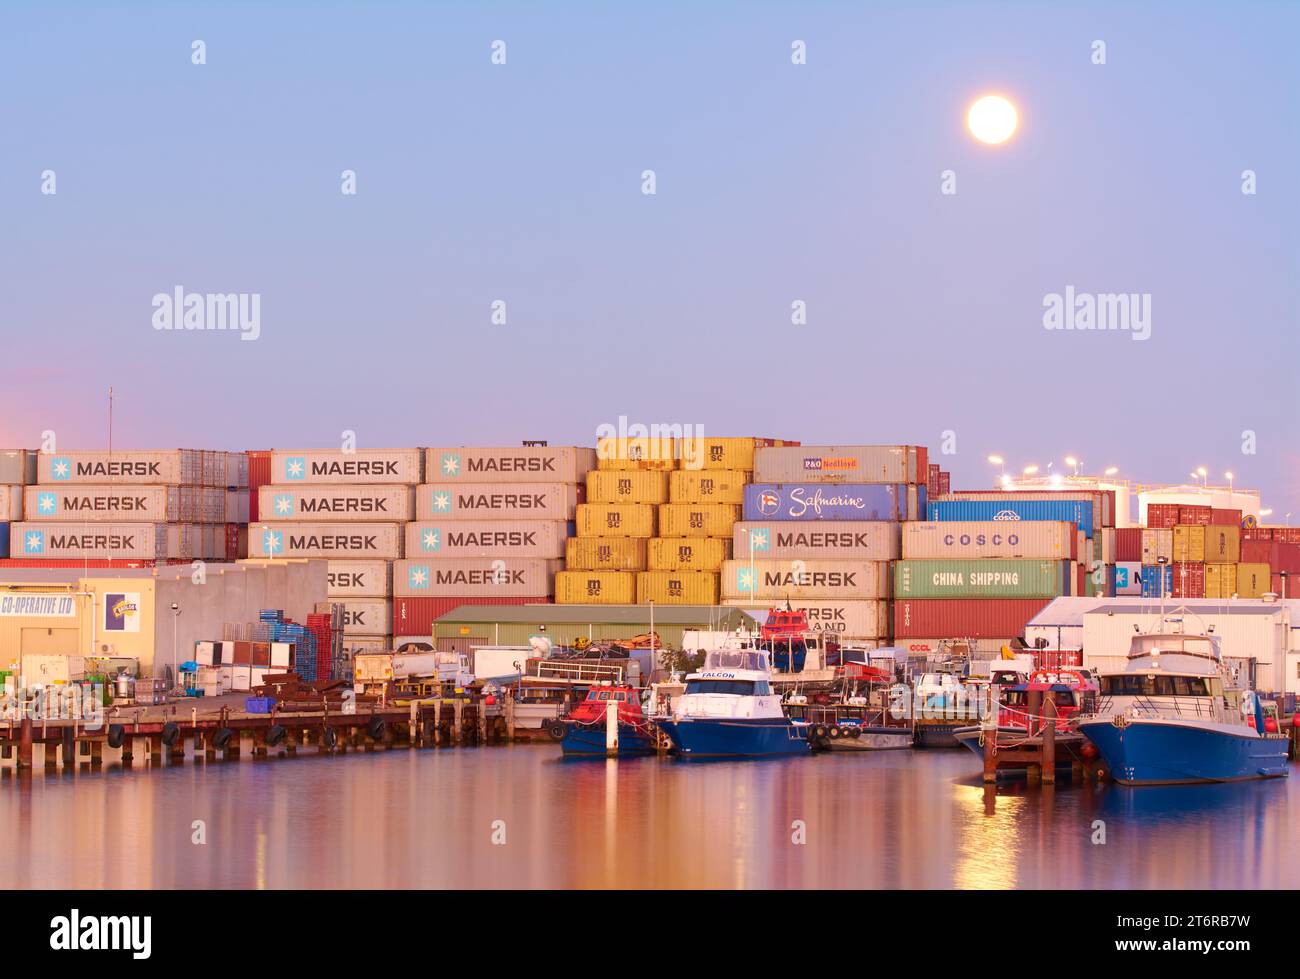 La sezione North Port Rous Head di Fremantle Harbour con la luna che sorge al crepuscolo sopra i container, North Fremantle, Australia Occidentale. Foto Stock